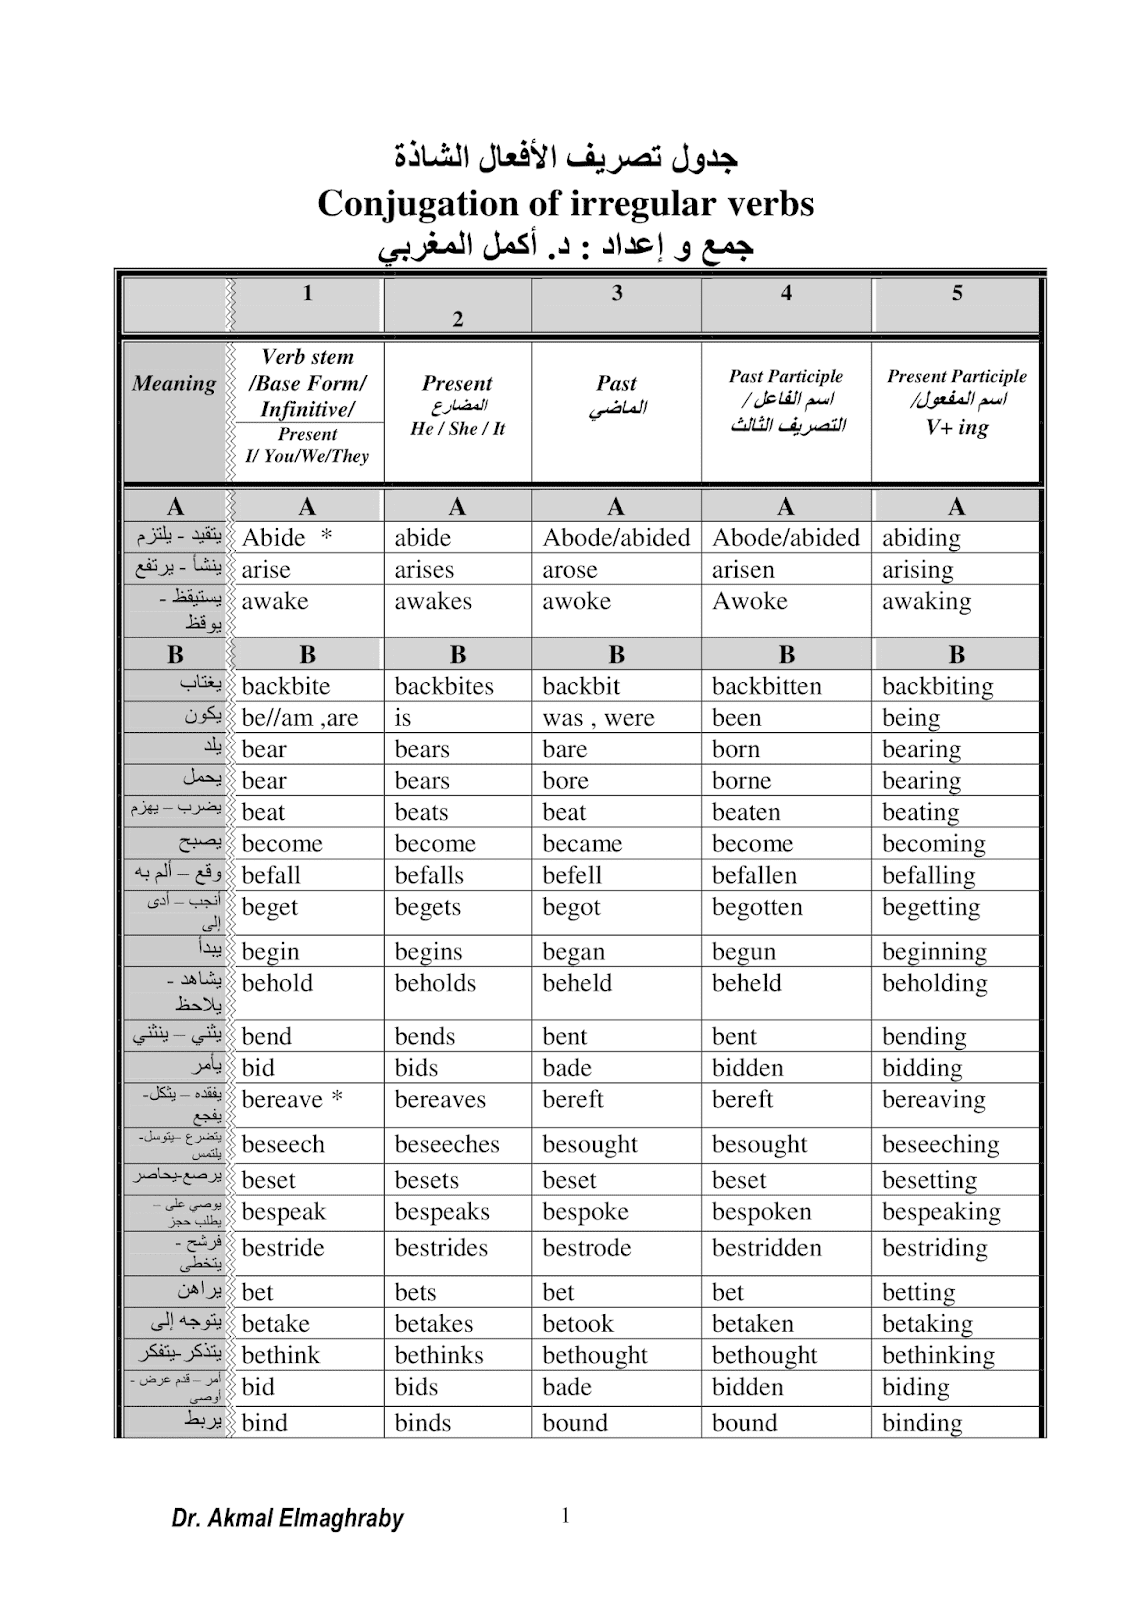 جدول تصريف الأفعال الشاذة في الانجيليزية مع الشرح بالعربية